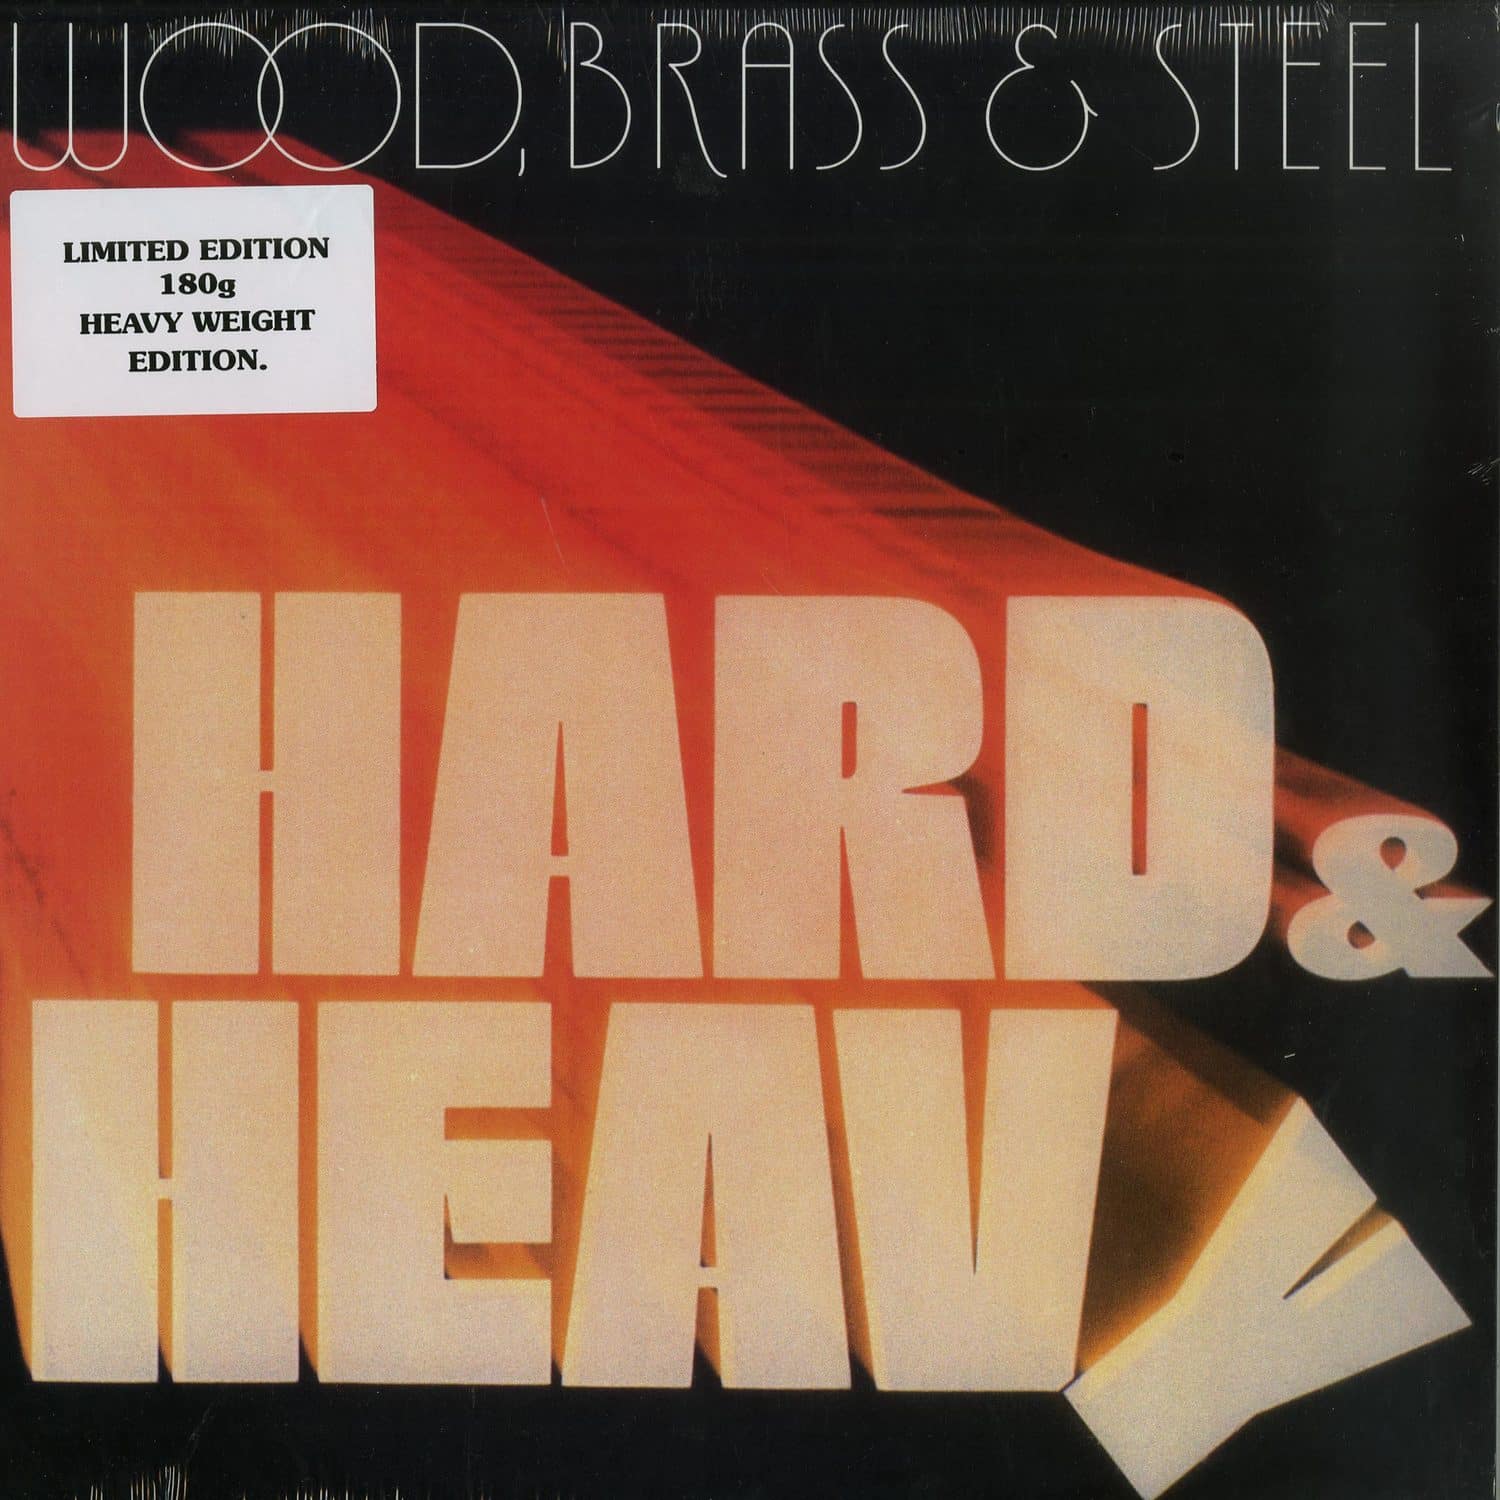 Wood, Brass & Steel - HARD & HEAVY 